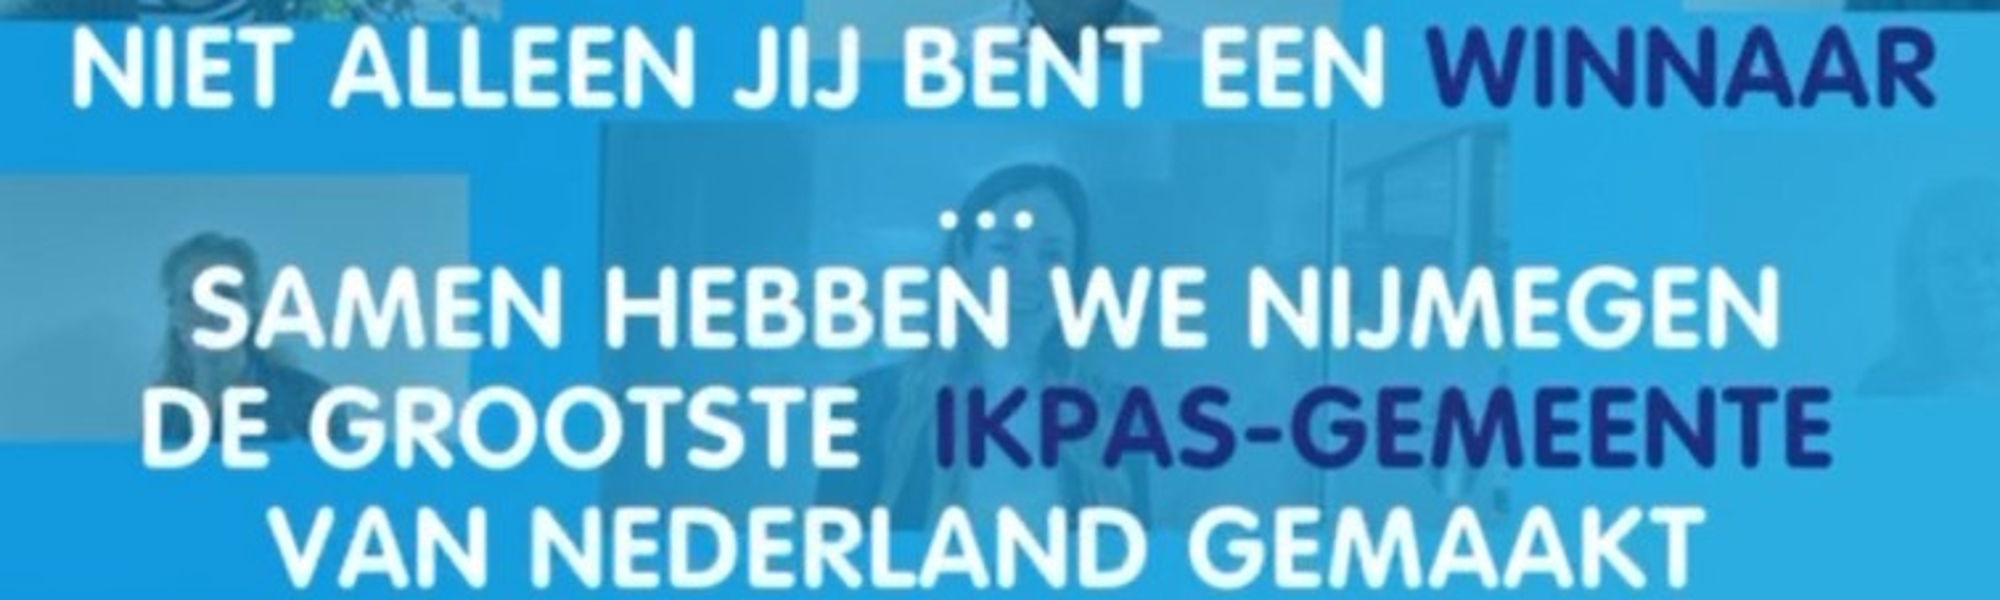 Nijmegen grootste IkPas-gemeente van Nederland